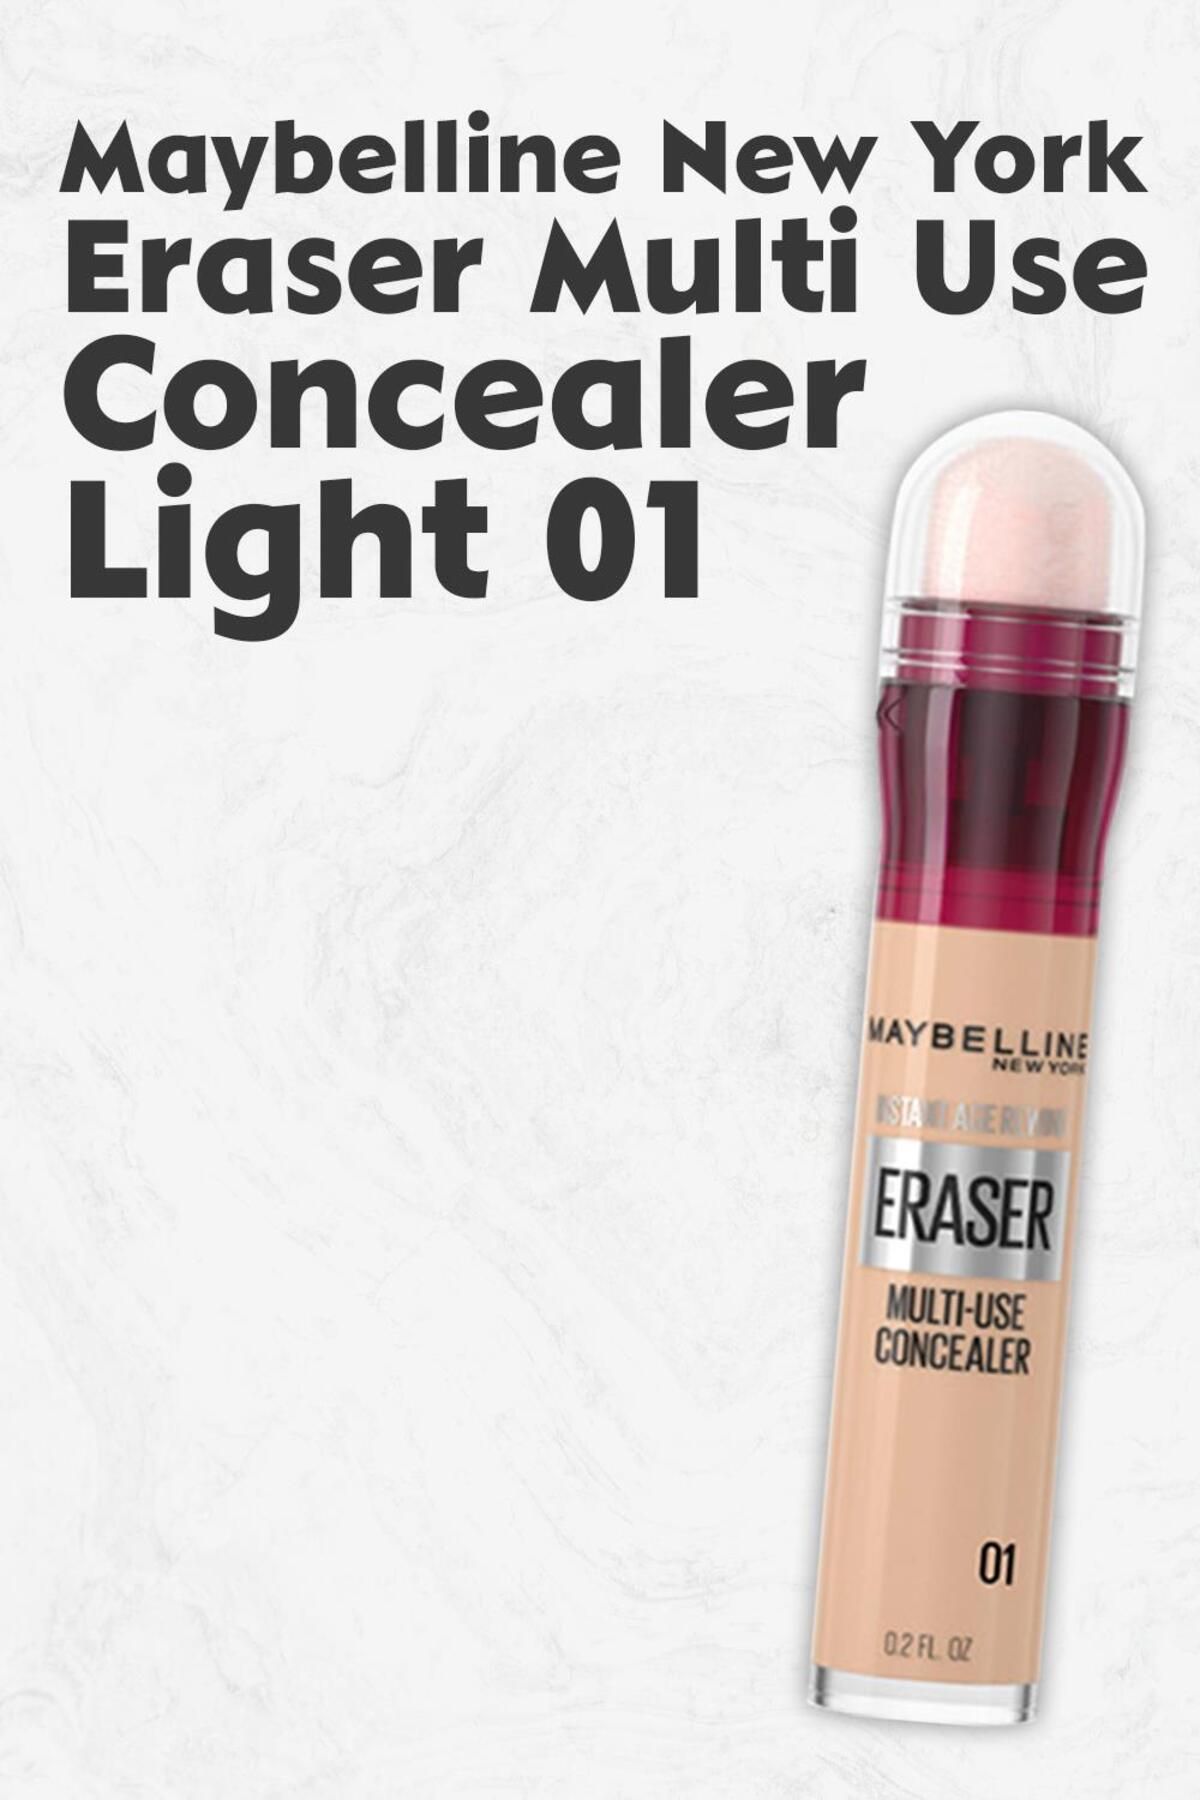 Maybelline New York Eraser Multi Use Concealer 01 Light